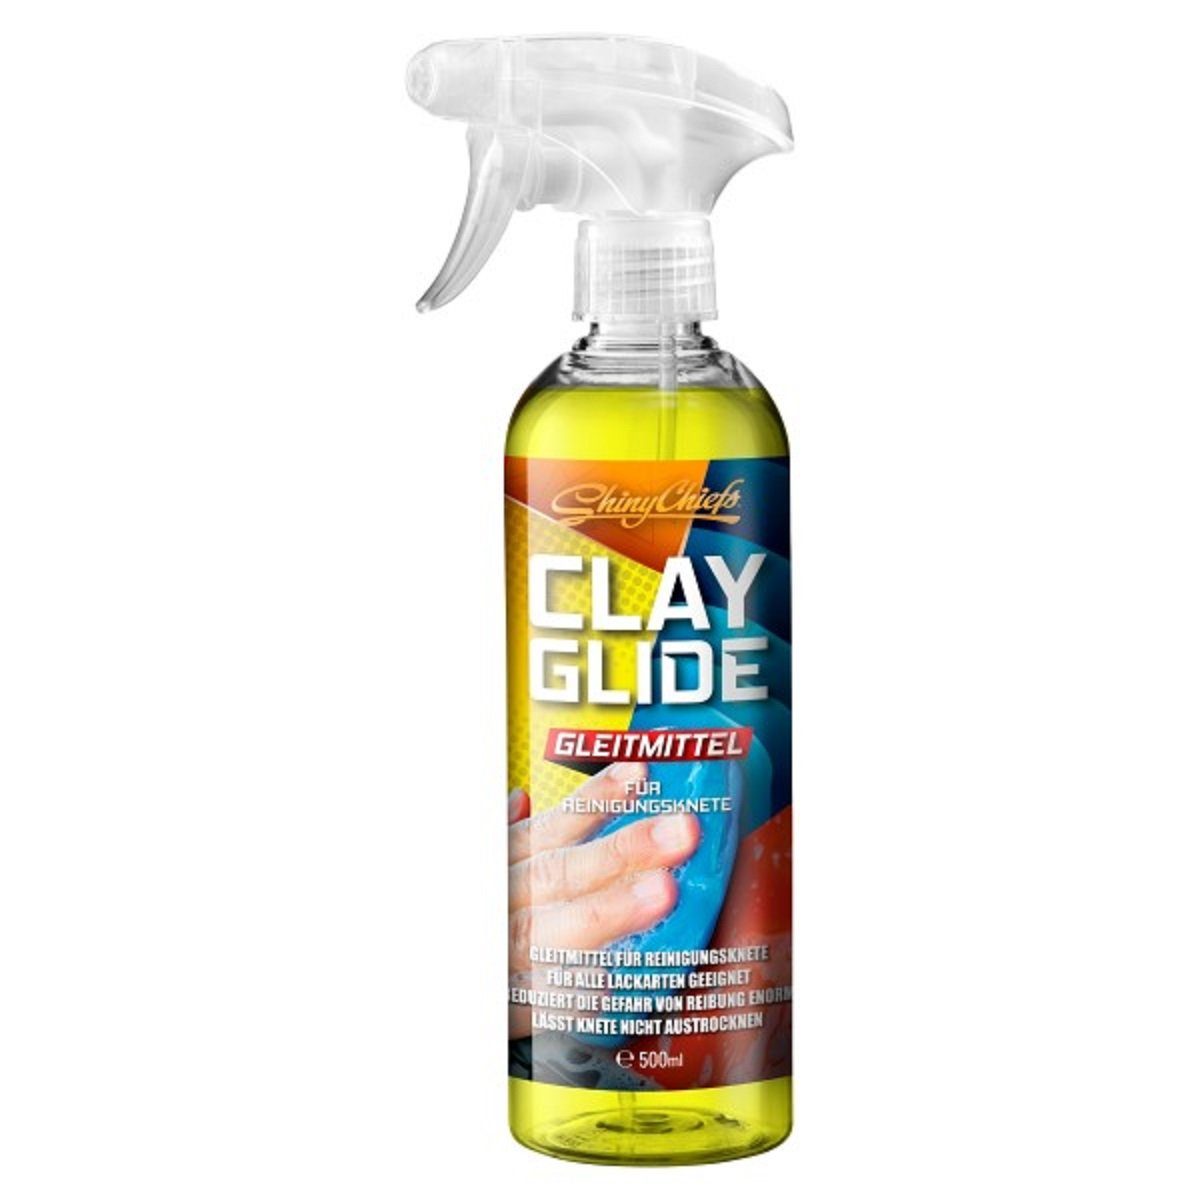 ShinyChiefs CLAY GLIDE GLEITMITTEL Hilfsmittel für den Einsatz von Reinigungsknete Auto-Reinigungsmittel (1-St)